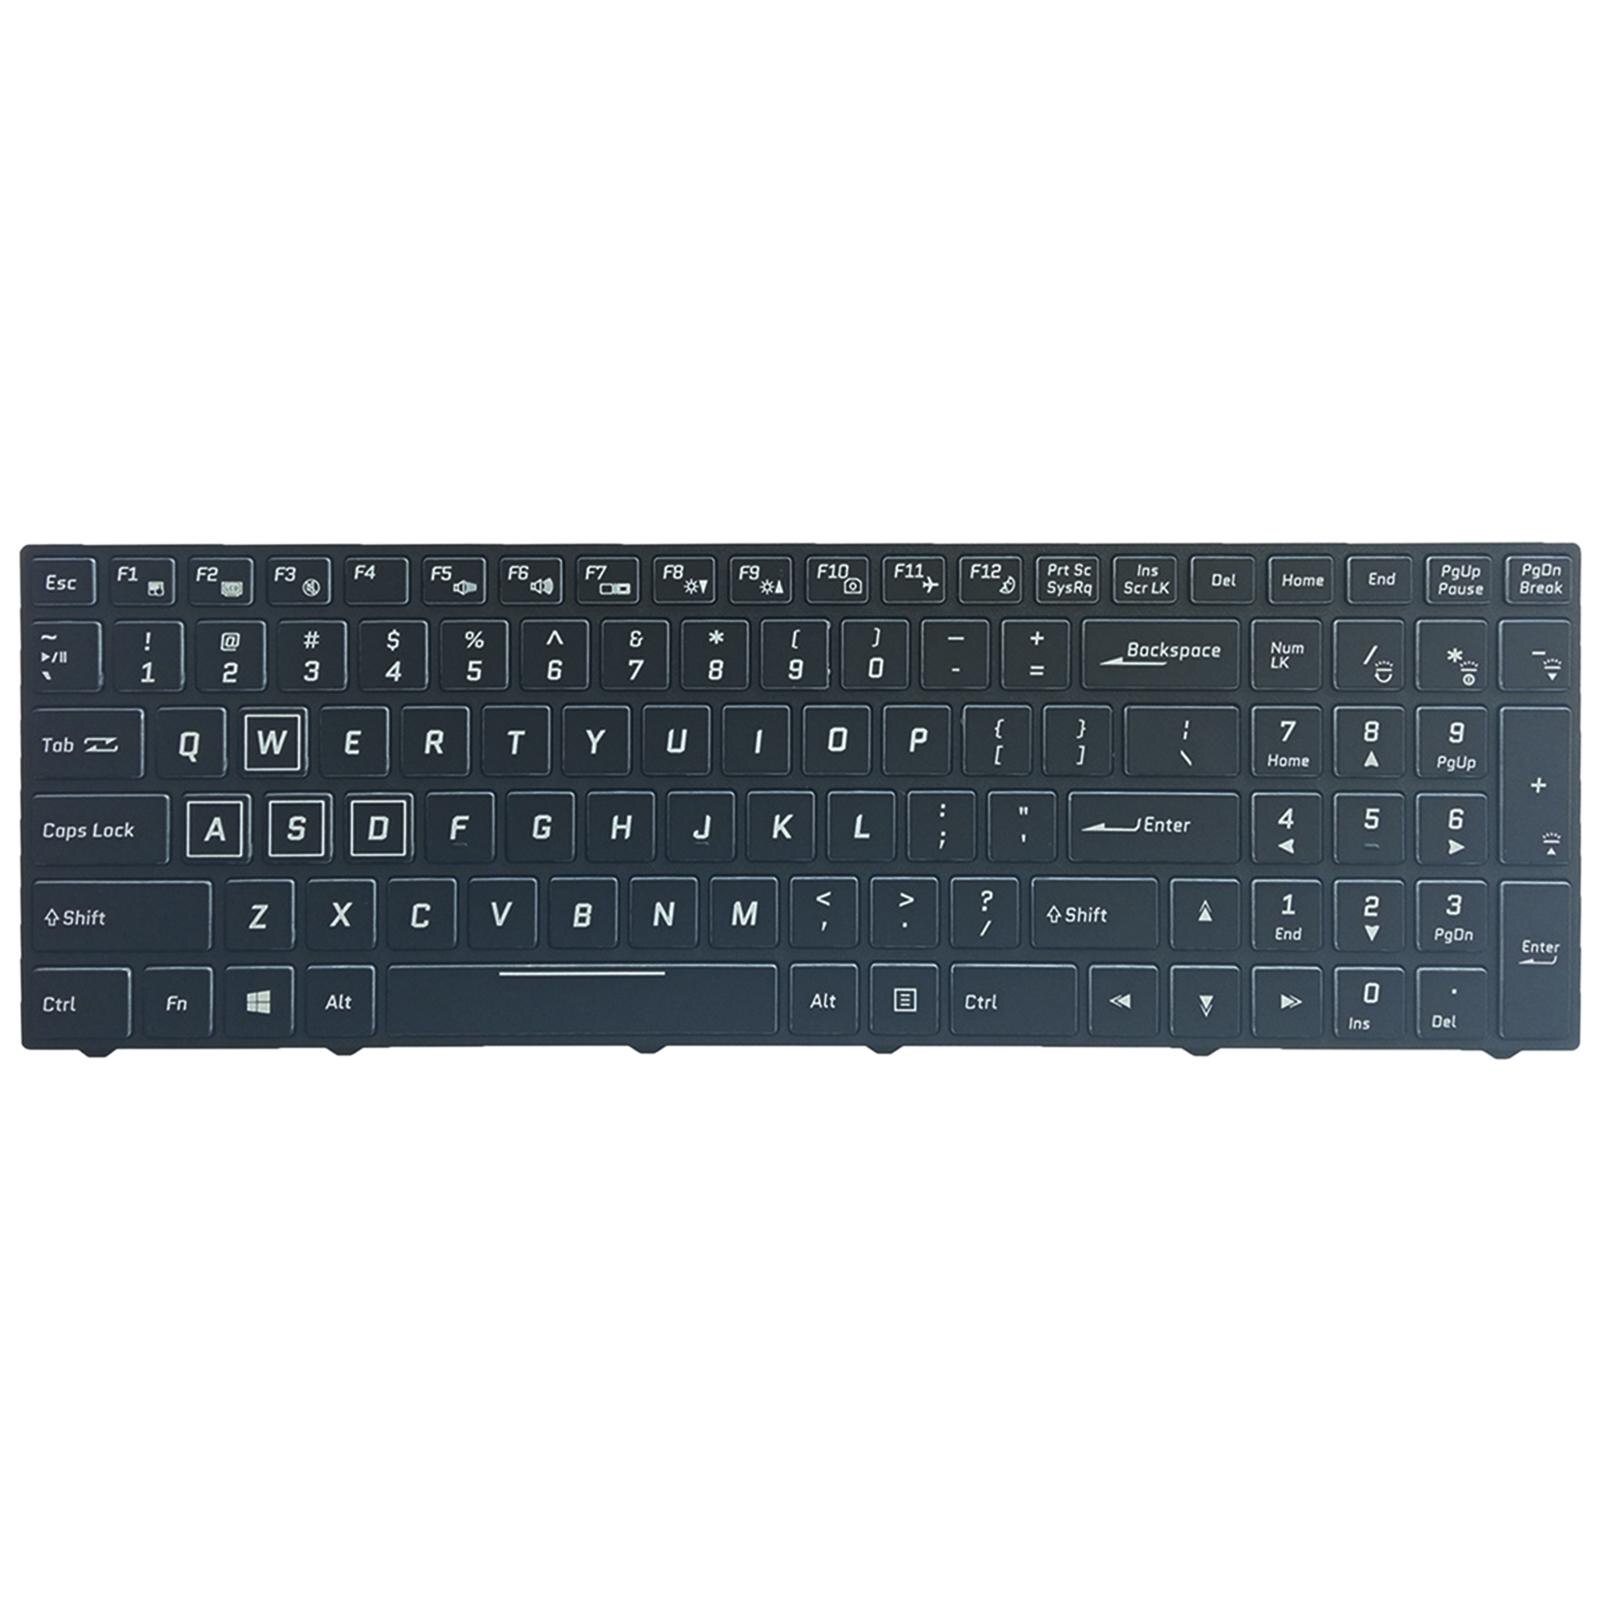 Membrane keyboard Laptop Keyboard, RGB Backlit ...